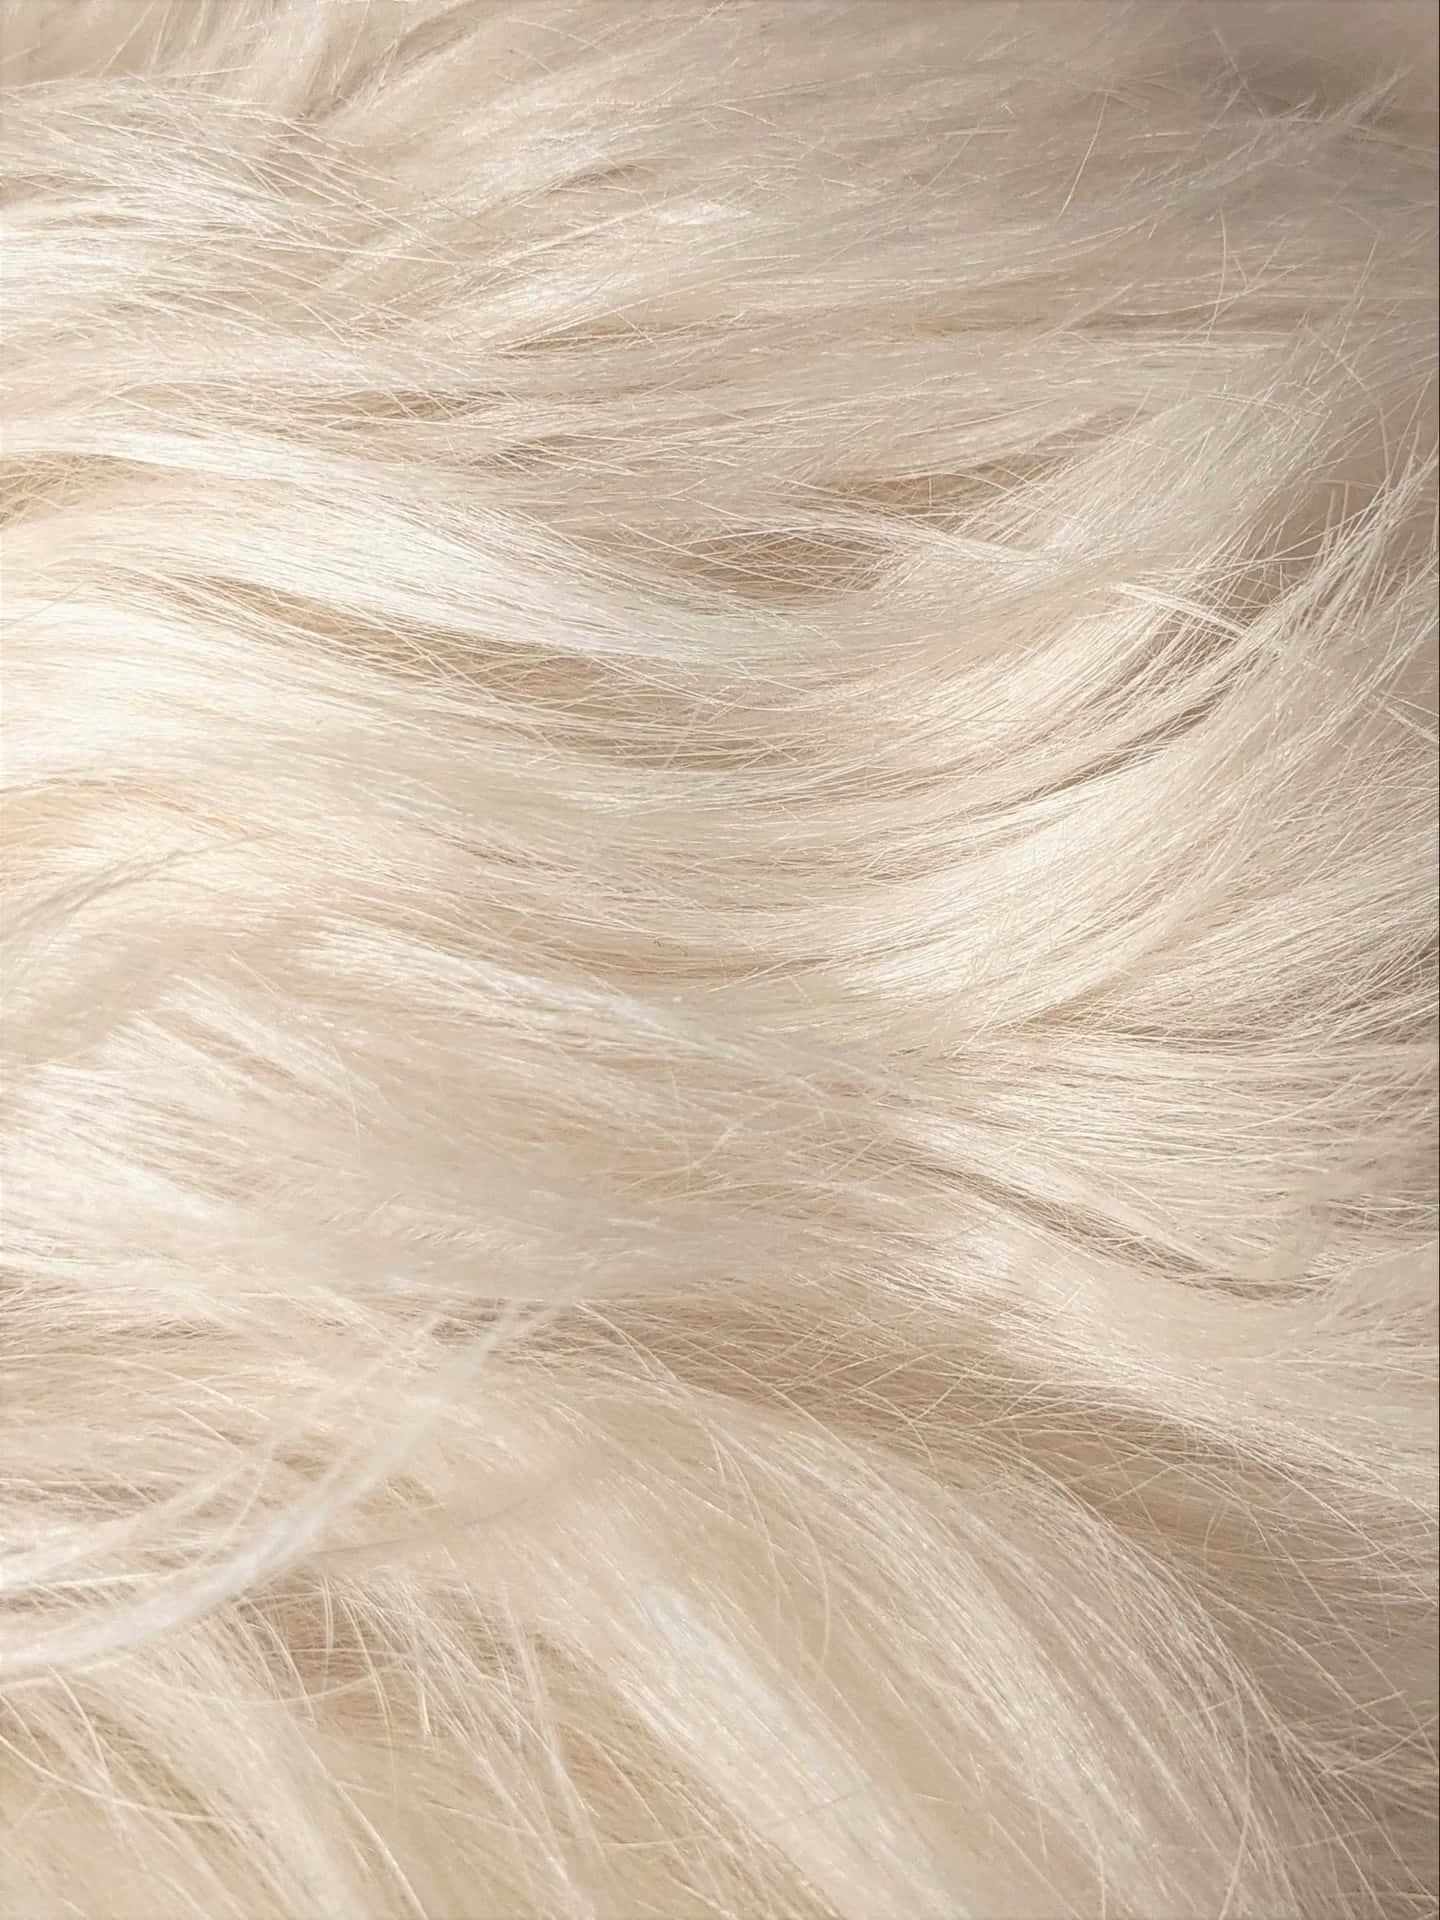 Blonde Textured Hair Closeup Wallpaper